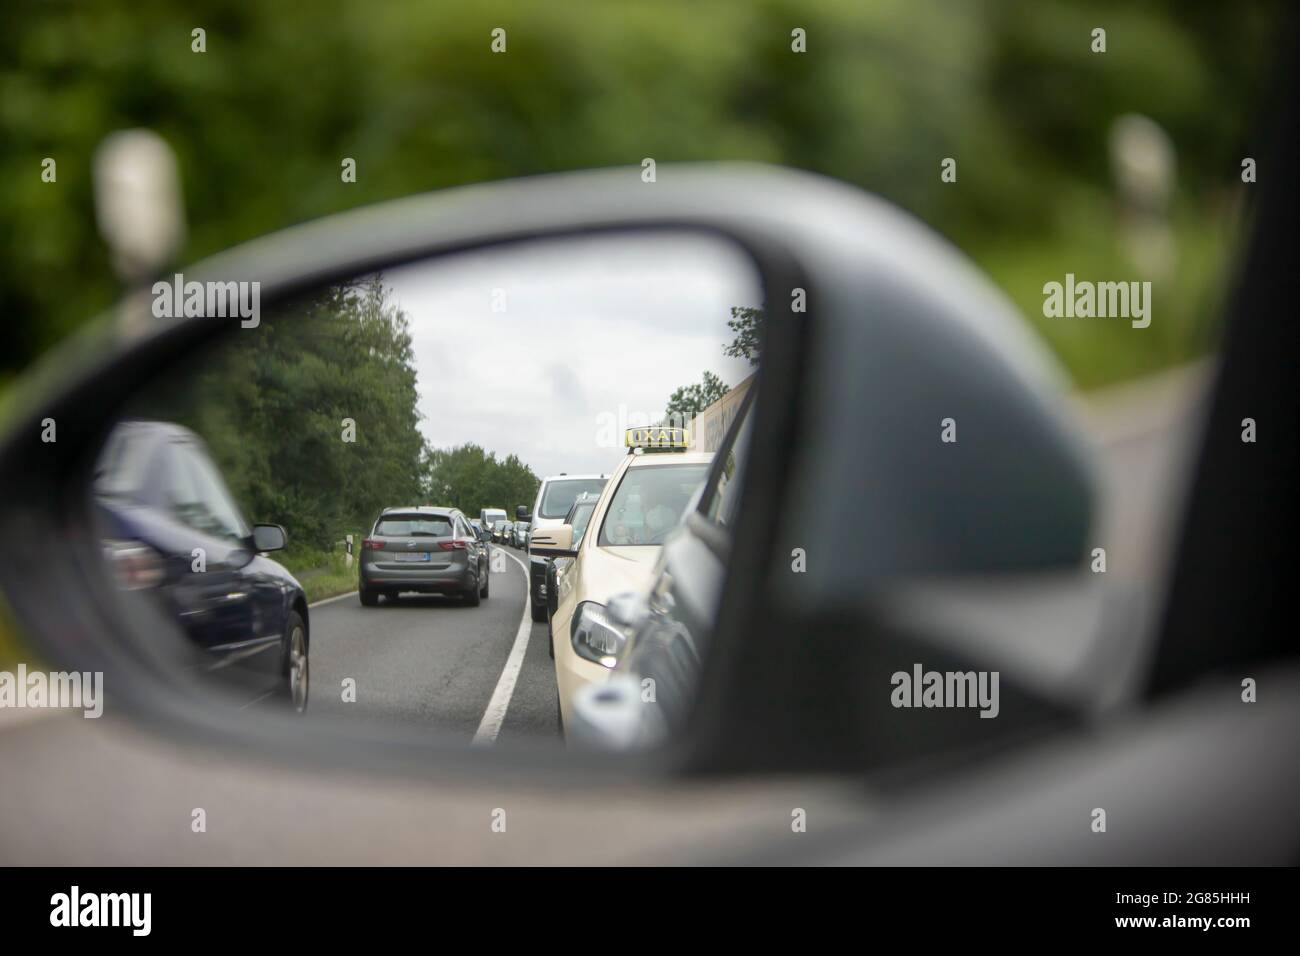 Meckenheim, NRW, Allemagne, 07 15 2021, vue sur les embouteillages dans le mirule latéral, taxi derrière la voiture Banque D'Images